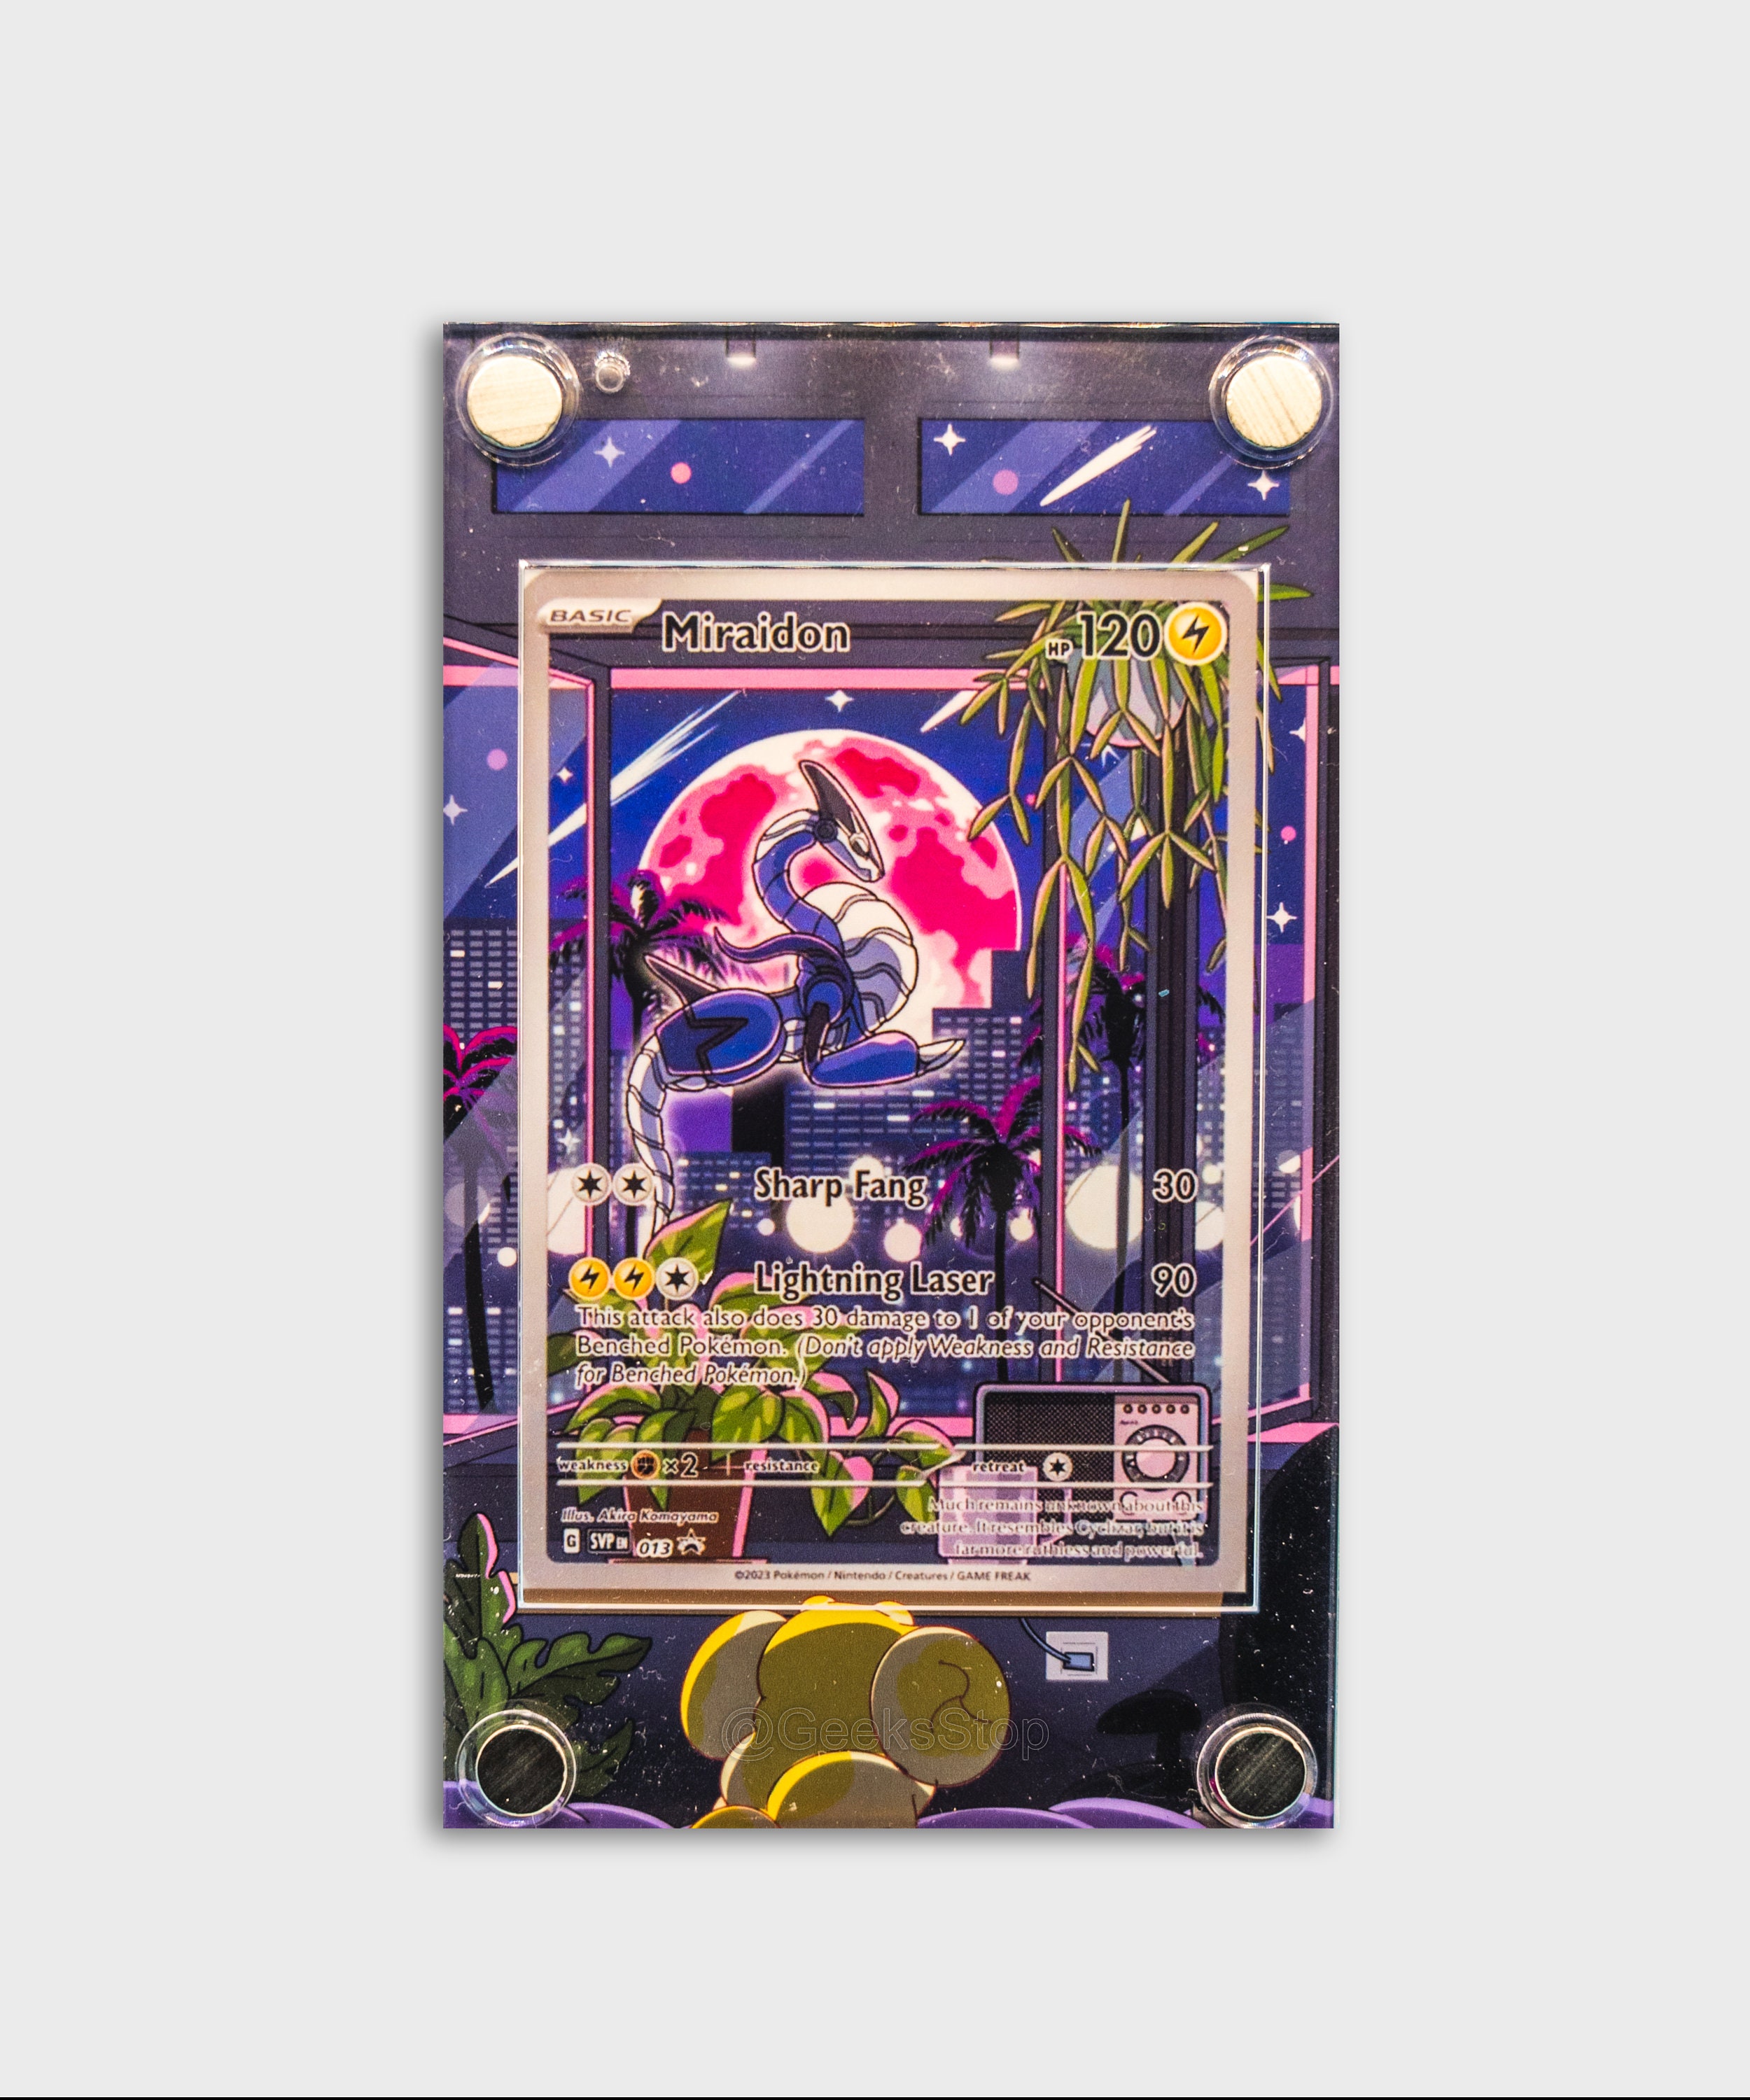 Giratina V Alternate Art Custom Pokemon Card Display Case -  Sweden